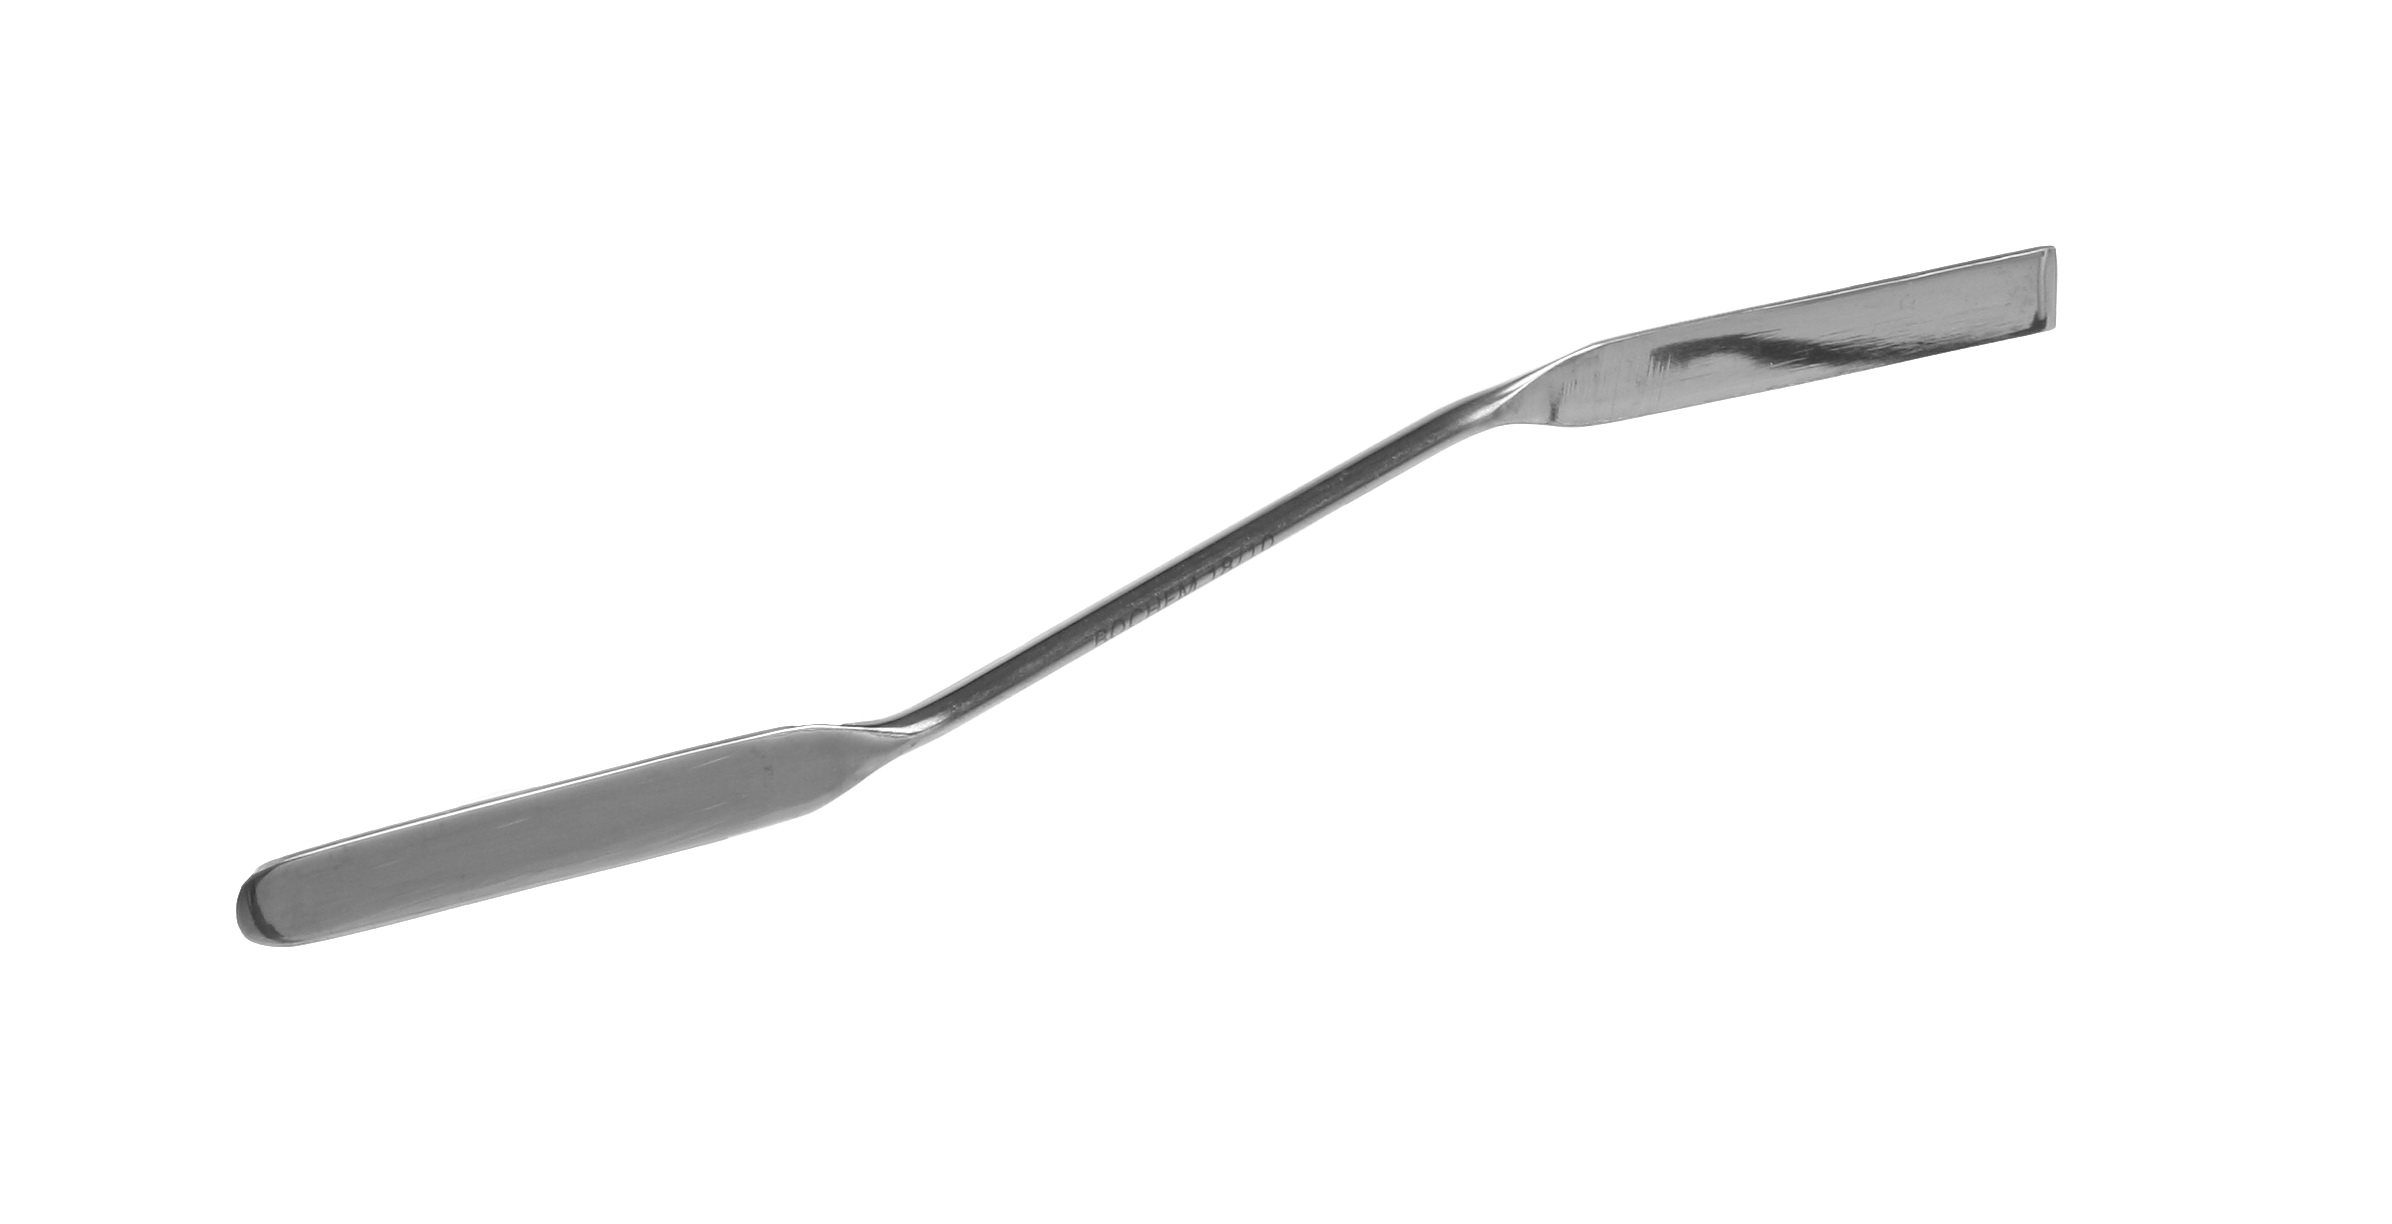 İkili spatula, kıvrık